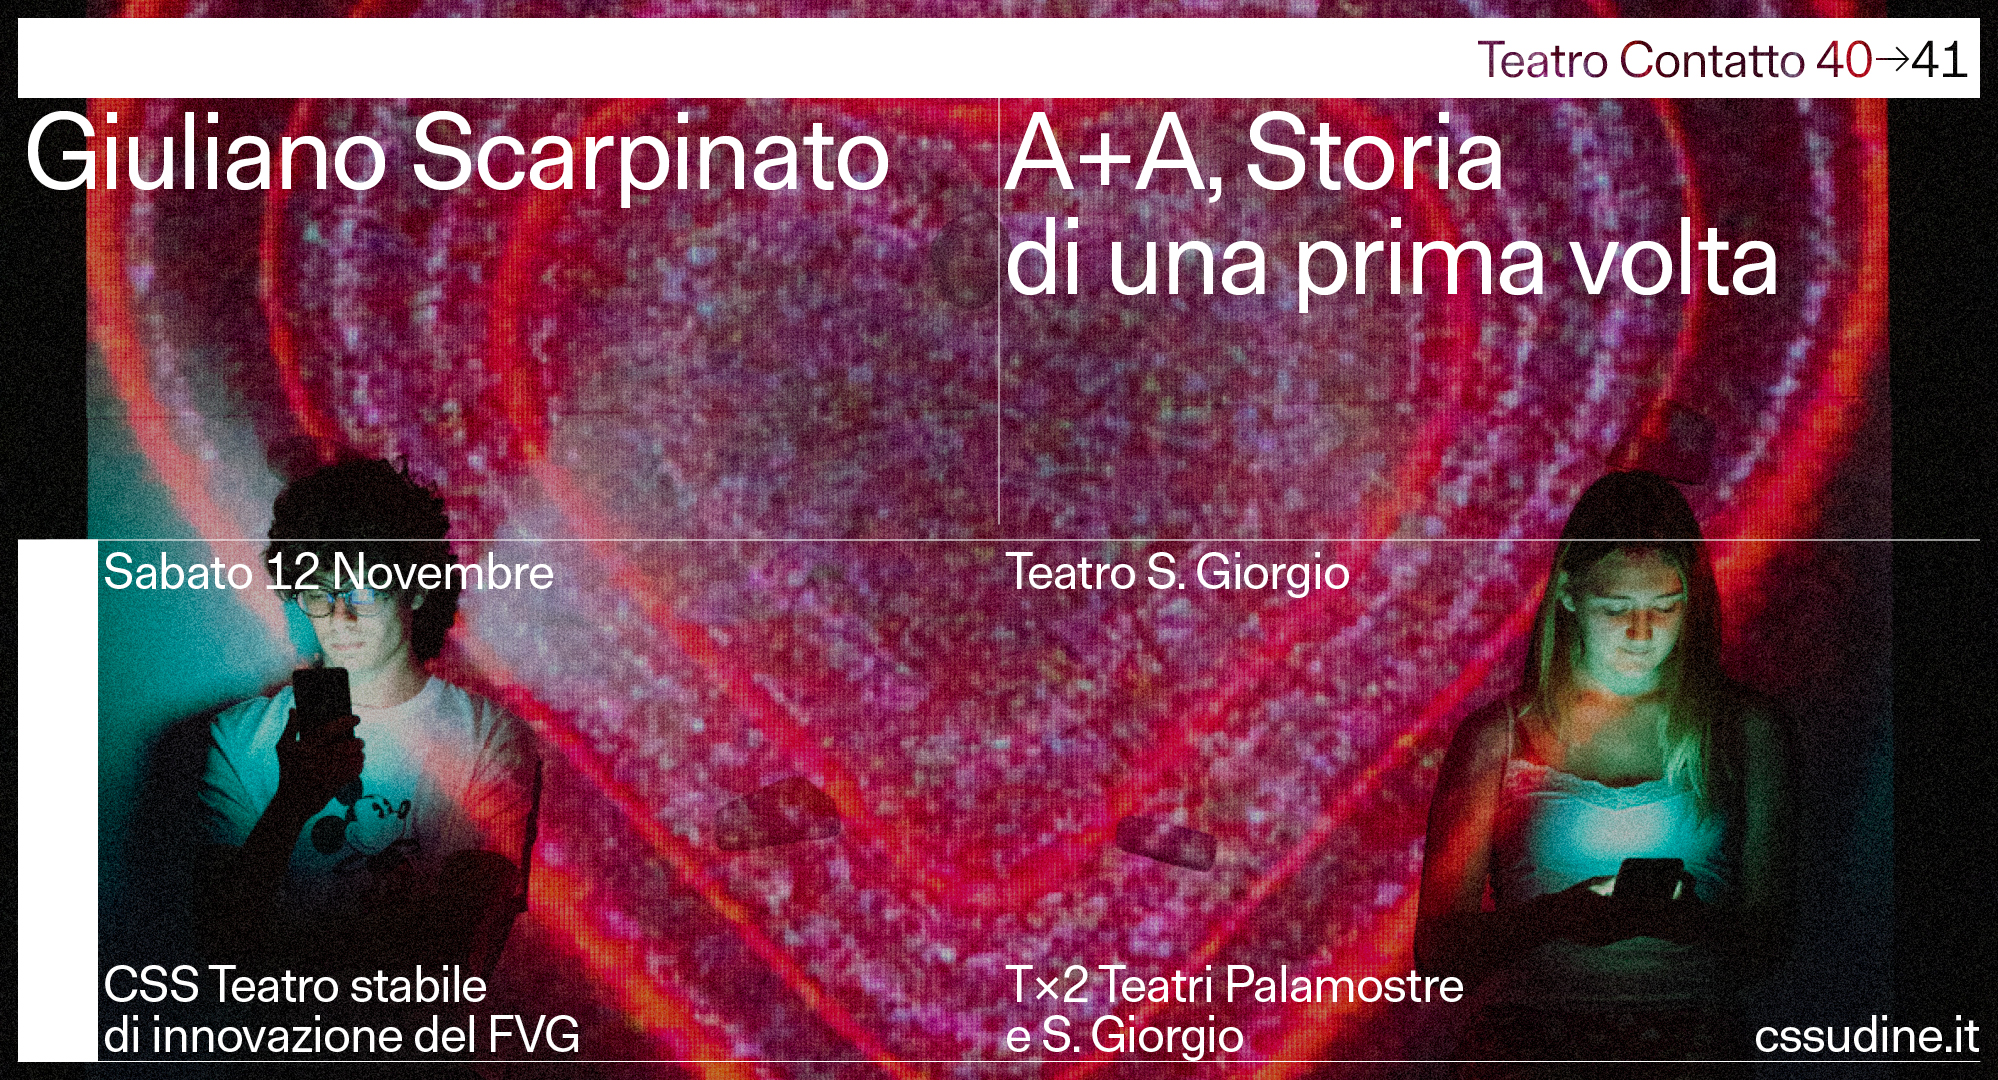 Giuliano Scarpinato con A+A Storia di una prima volta a Teatro Contatto 40